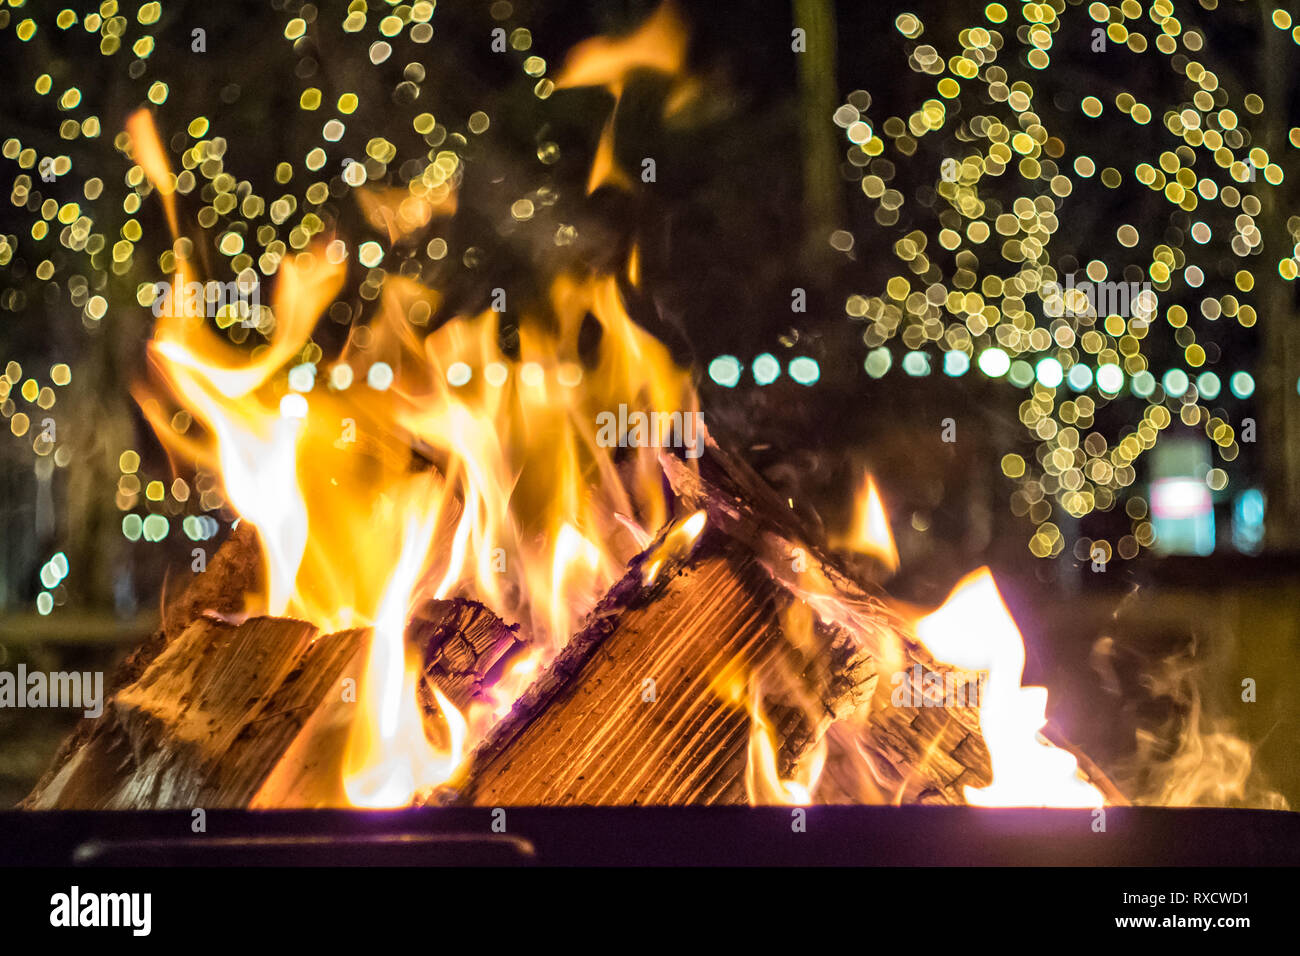 Impressionen vom Weihnachtsmarkt en Pfaffenhofen - brennendes Holz, Feuerstelle zum Aufwärmen Foto de stock